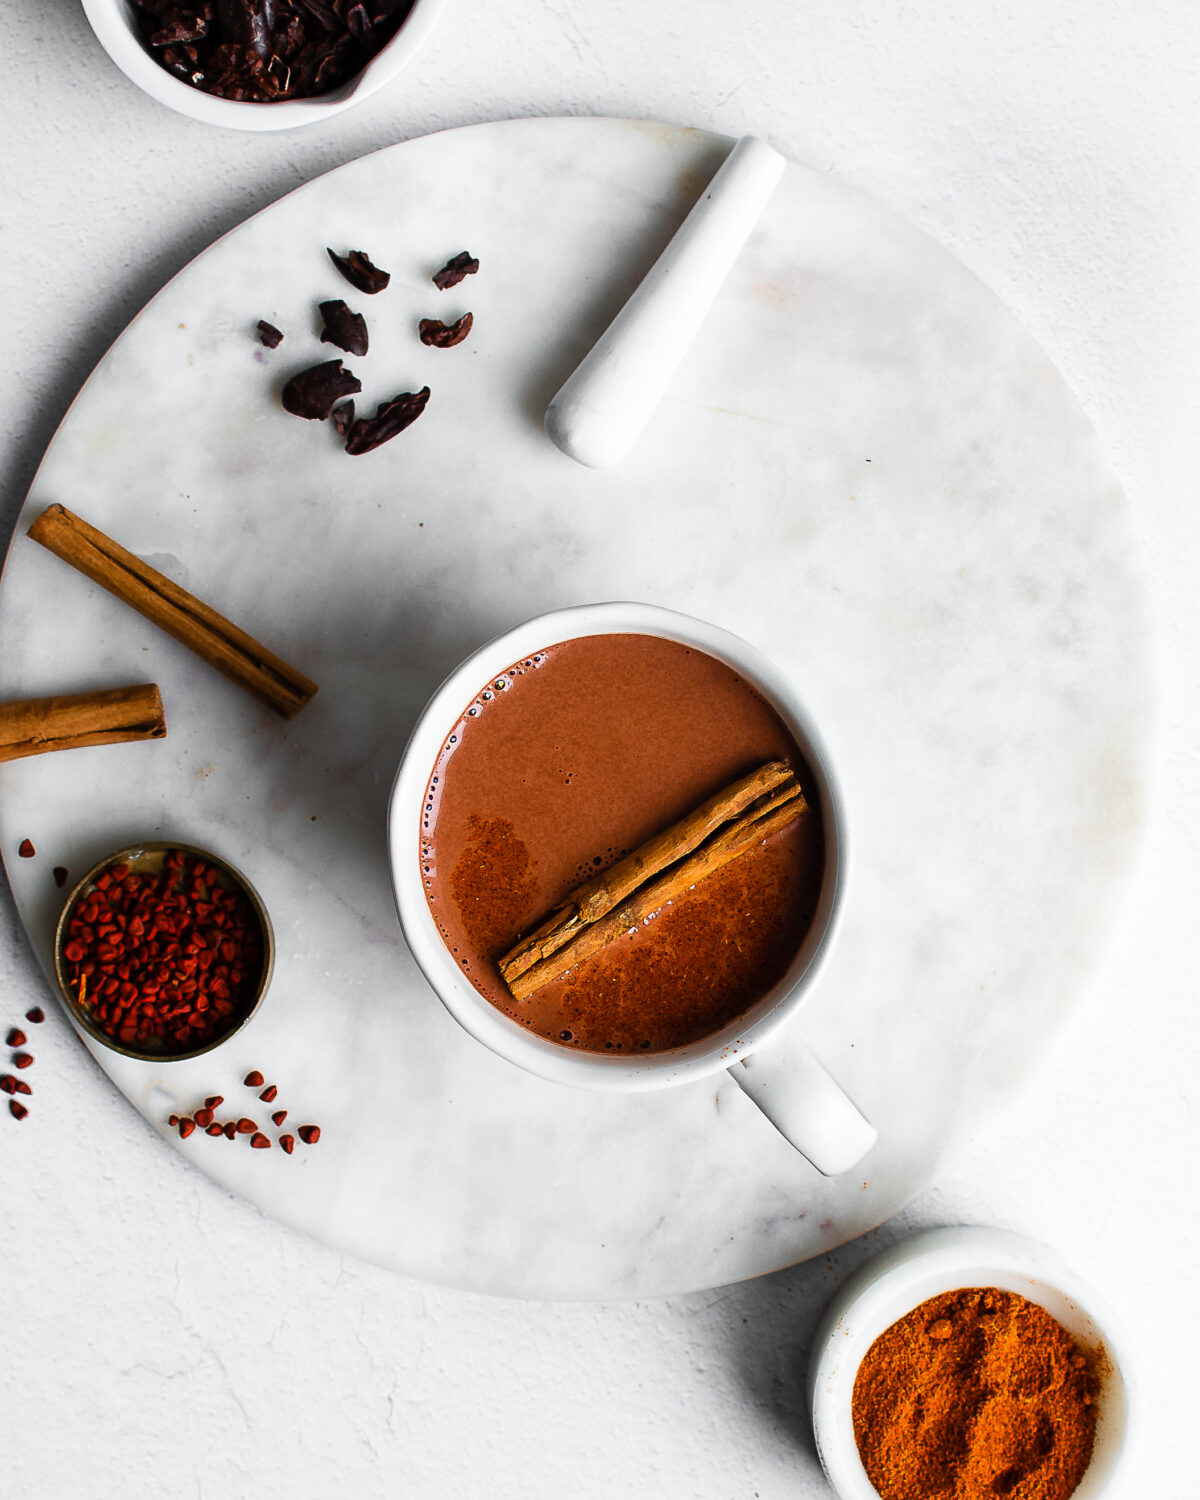 Quế, hạt tiêu allspice, bột ớt chile, và annatto ngọt tự nhiên tạo hương vị cho món chocolate nóng lấy cảm hứng từ người Maya này. (Ảnh: Jennifer McGruther)